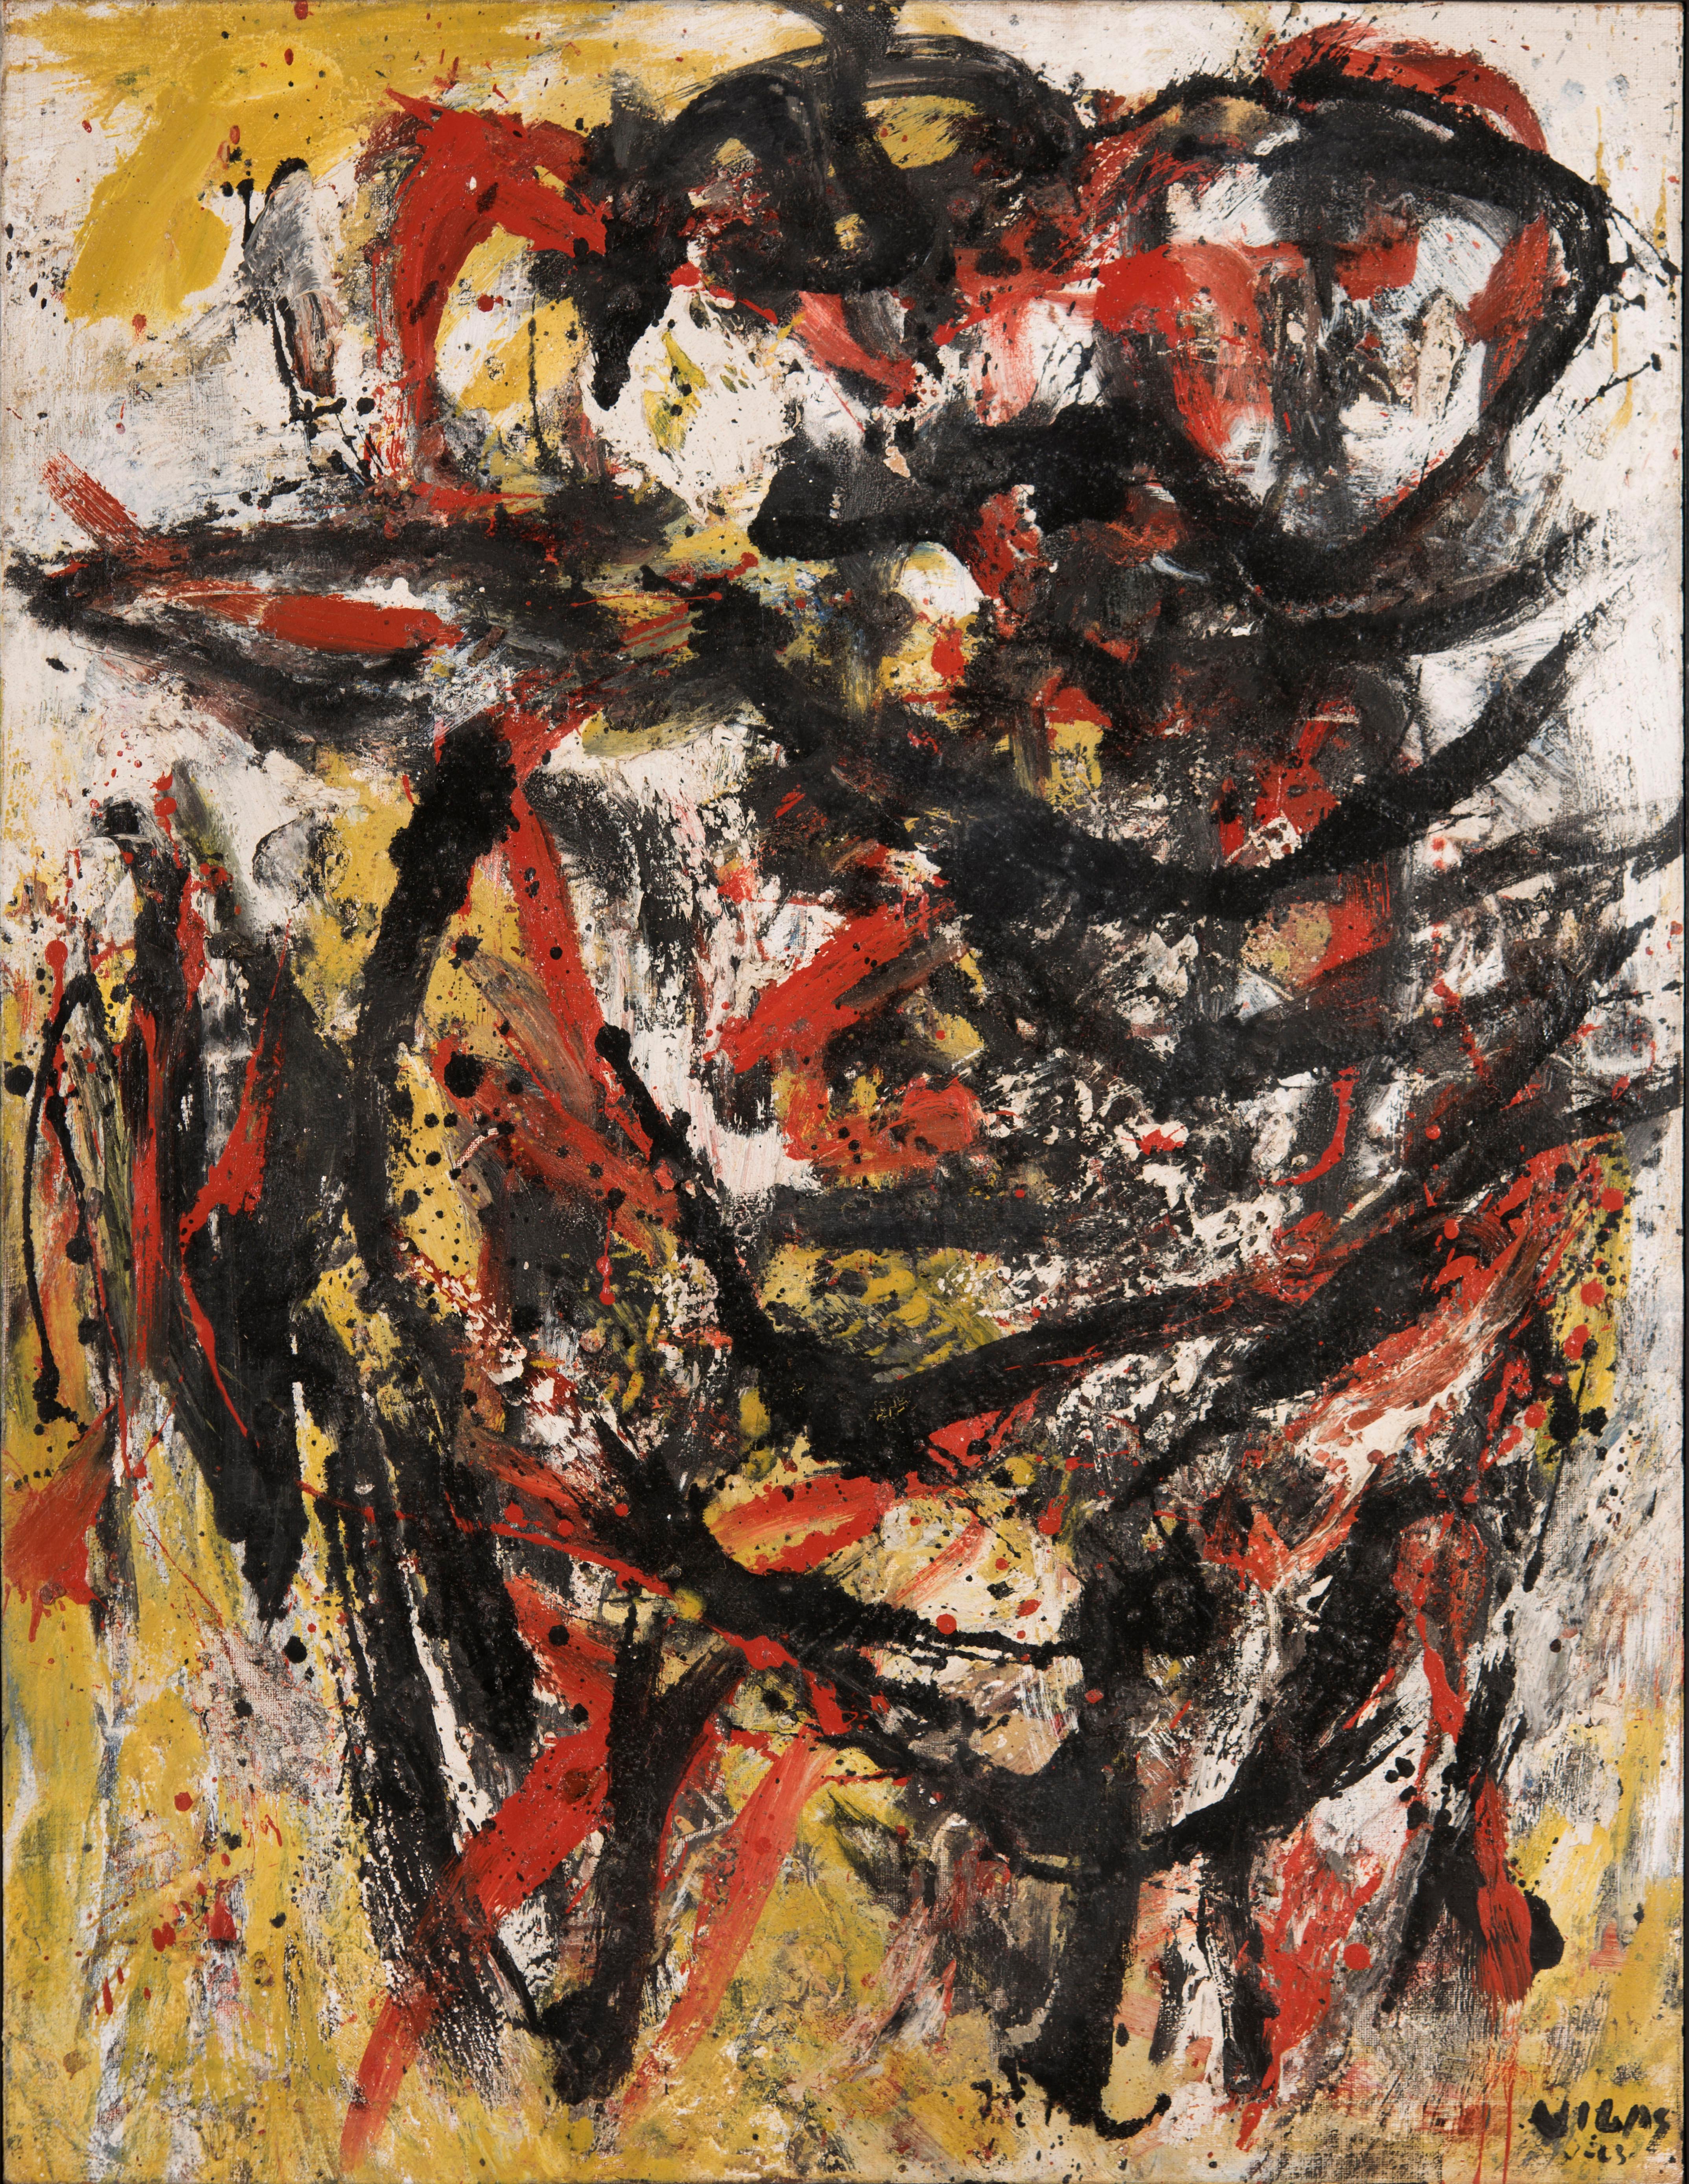 Oswaldo Vigas
Terricola, 1963
Öl auf Leinwand
116 x 90 cm
45,6 x 35,4 Zoll.

Das Gemälde wird von einem Echtheitszertifikat begleitet.
Katze. Rais. 1963.131
Provenienz:
Private Collection, Vereinigte Staaten

Oswaldo Vigas (geb. 1923, Valencia,